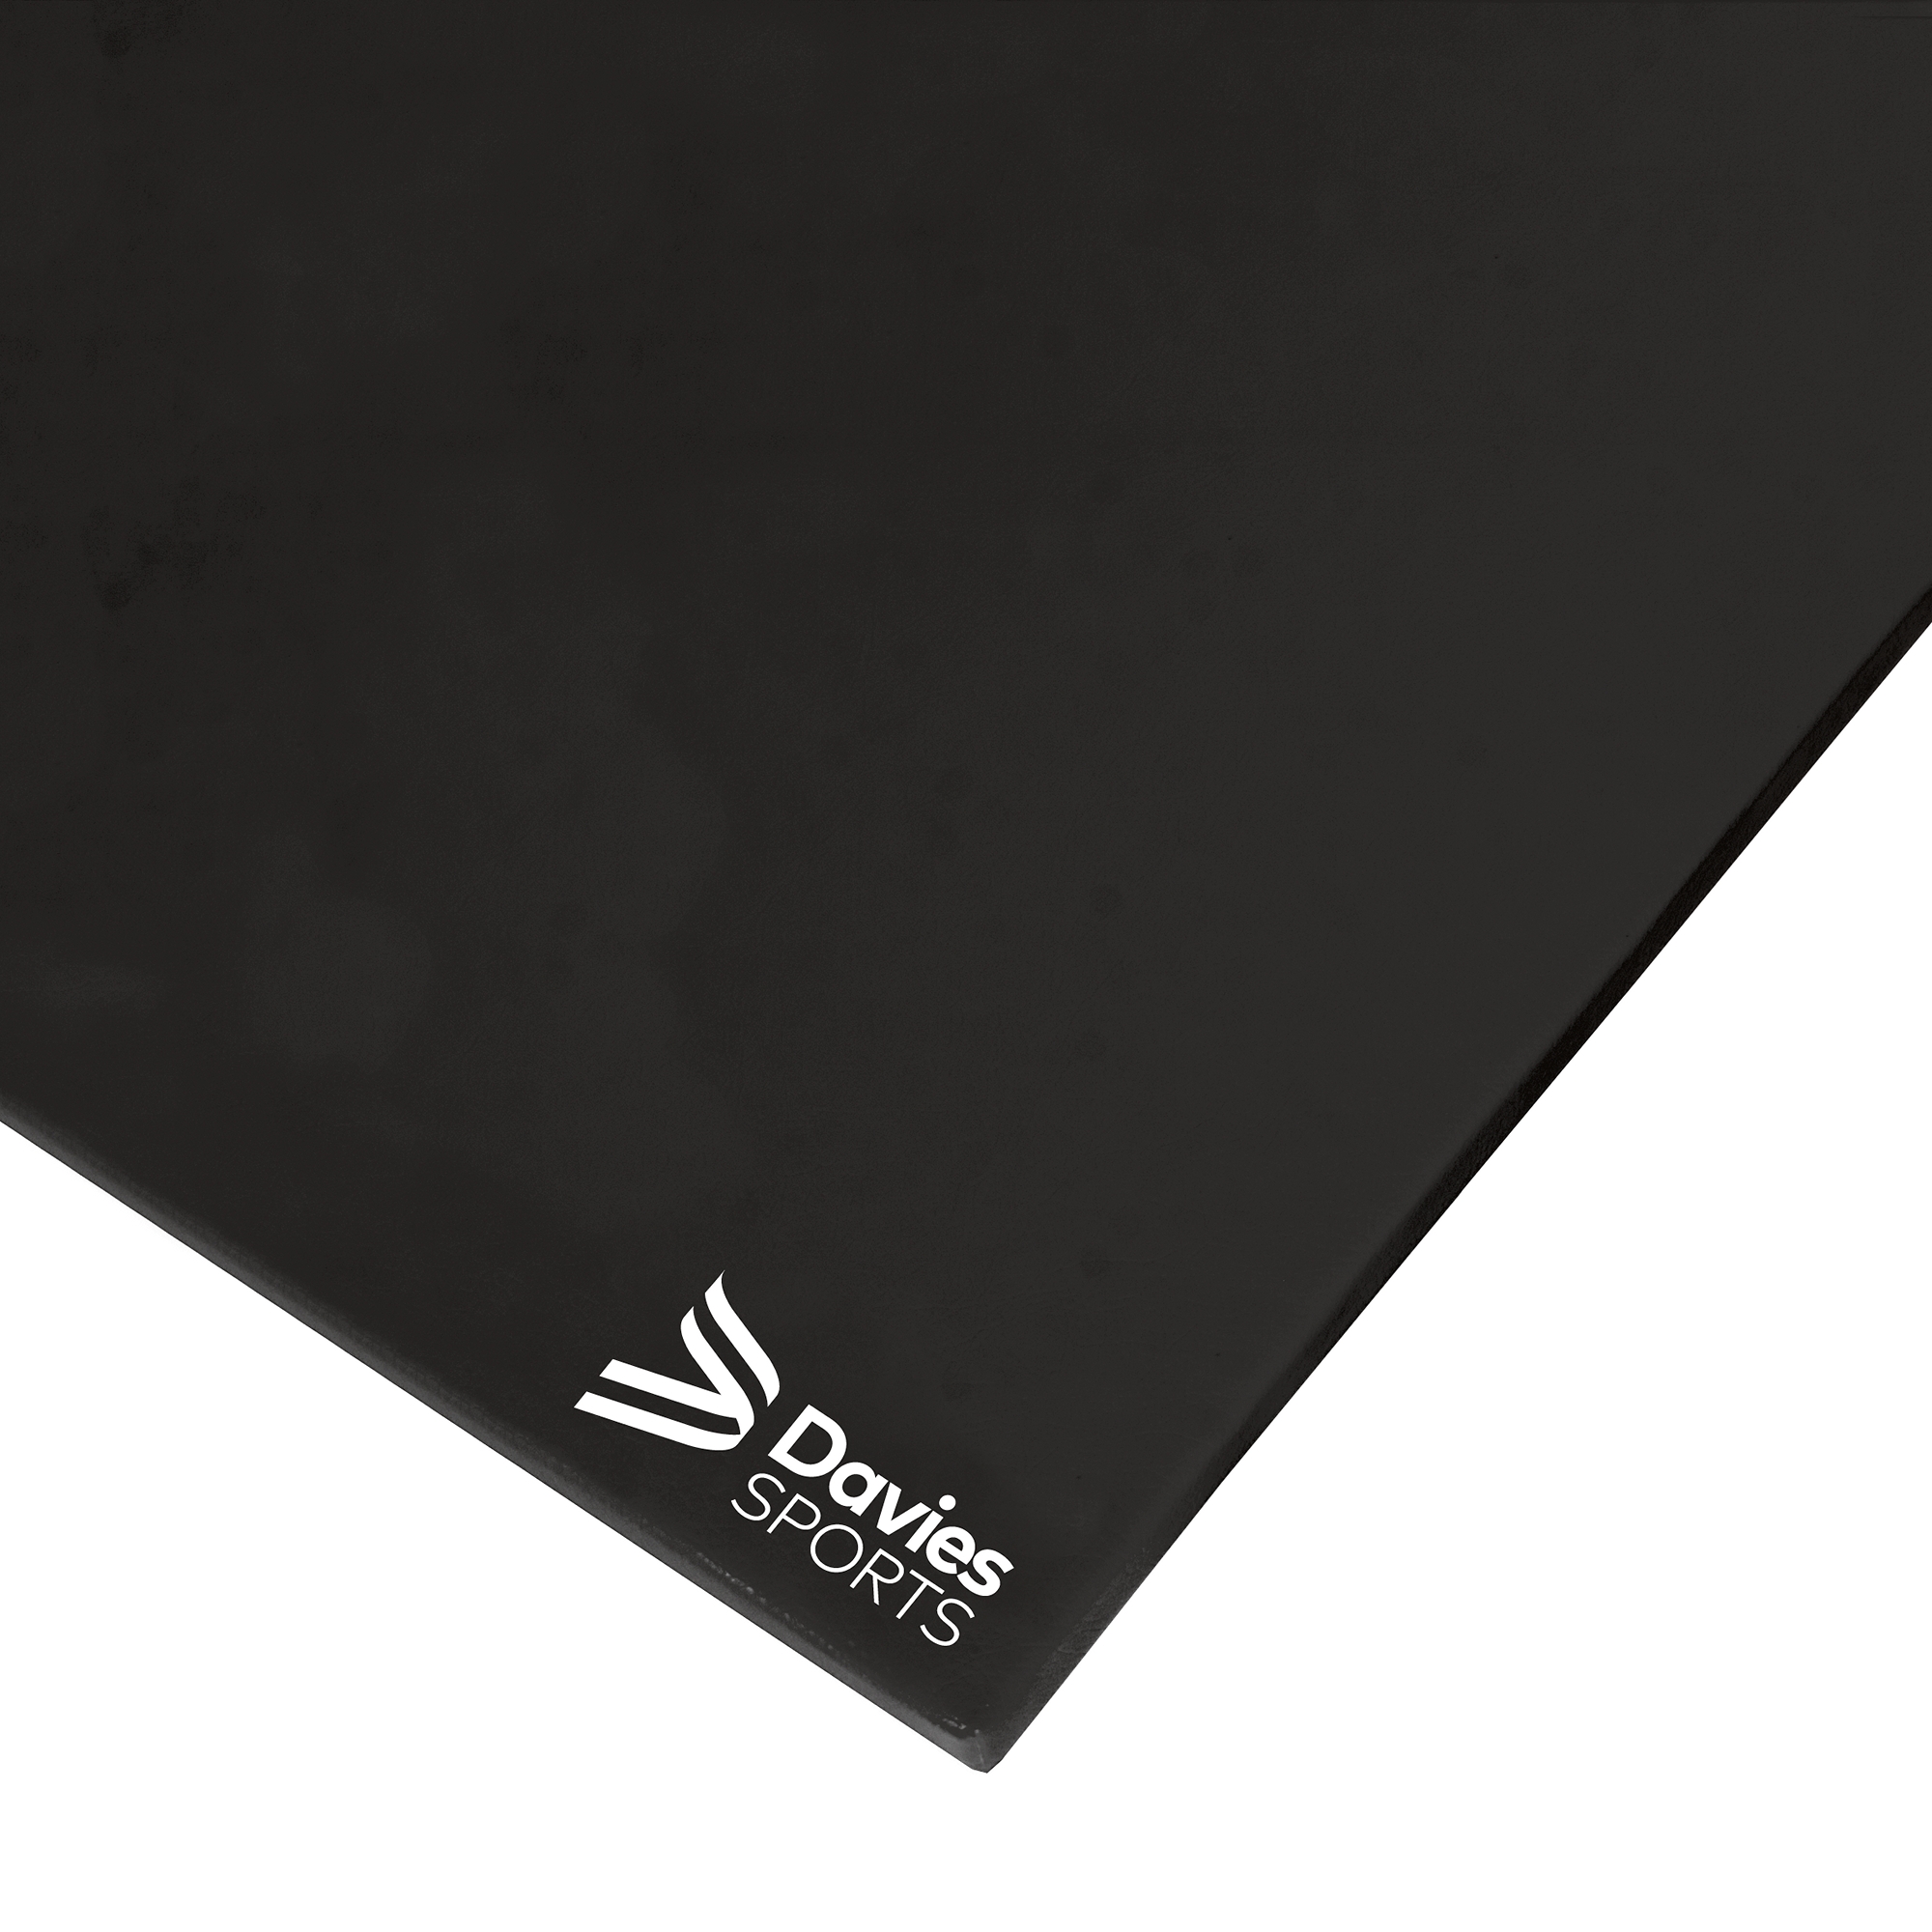 Davies Sports Agility Mat Standard Black - 2.44m x 1.22m x 50mm